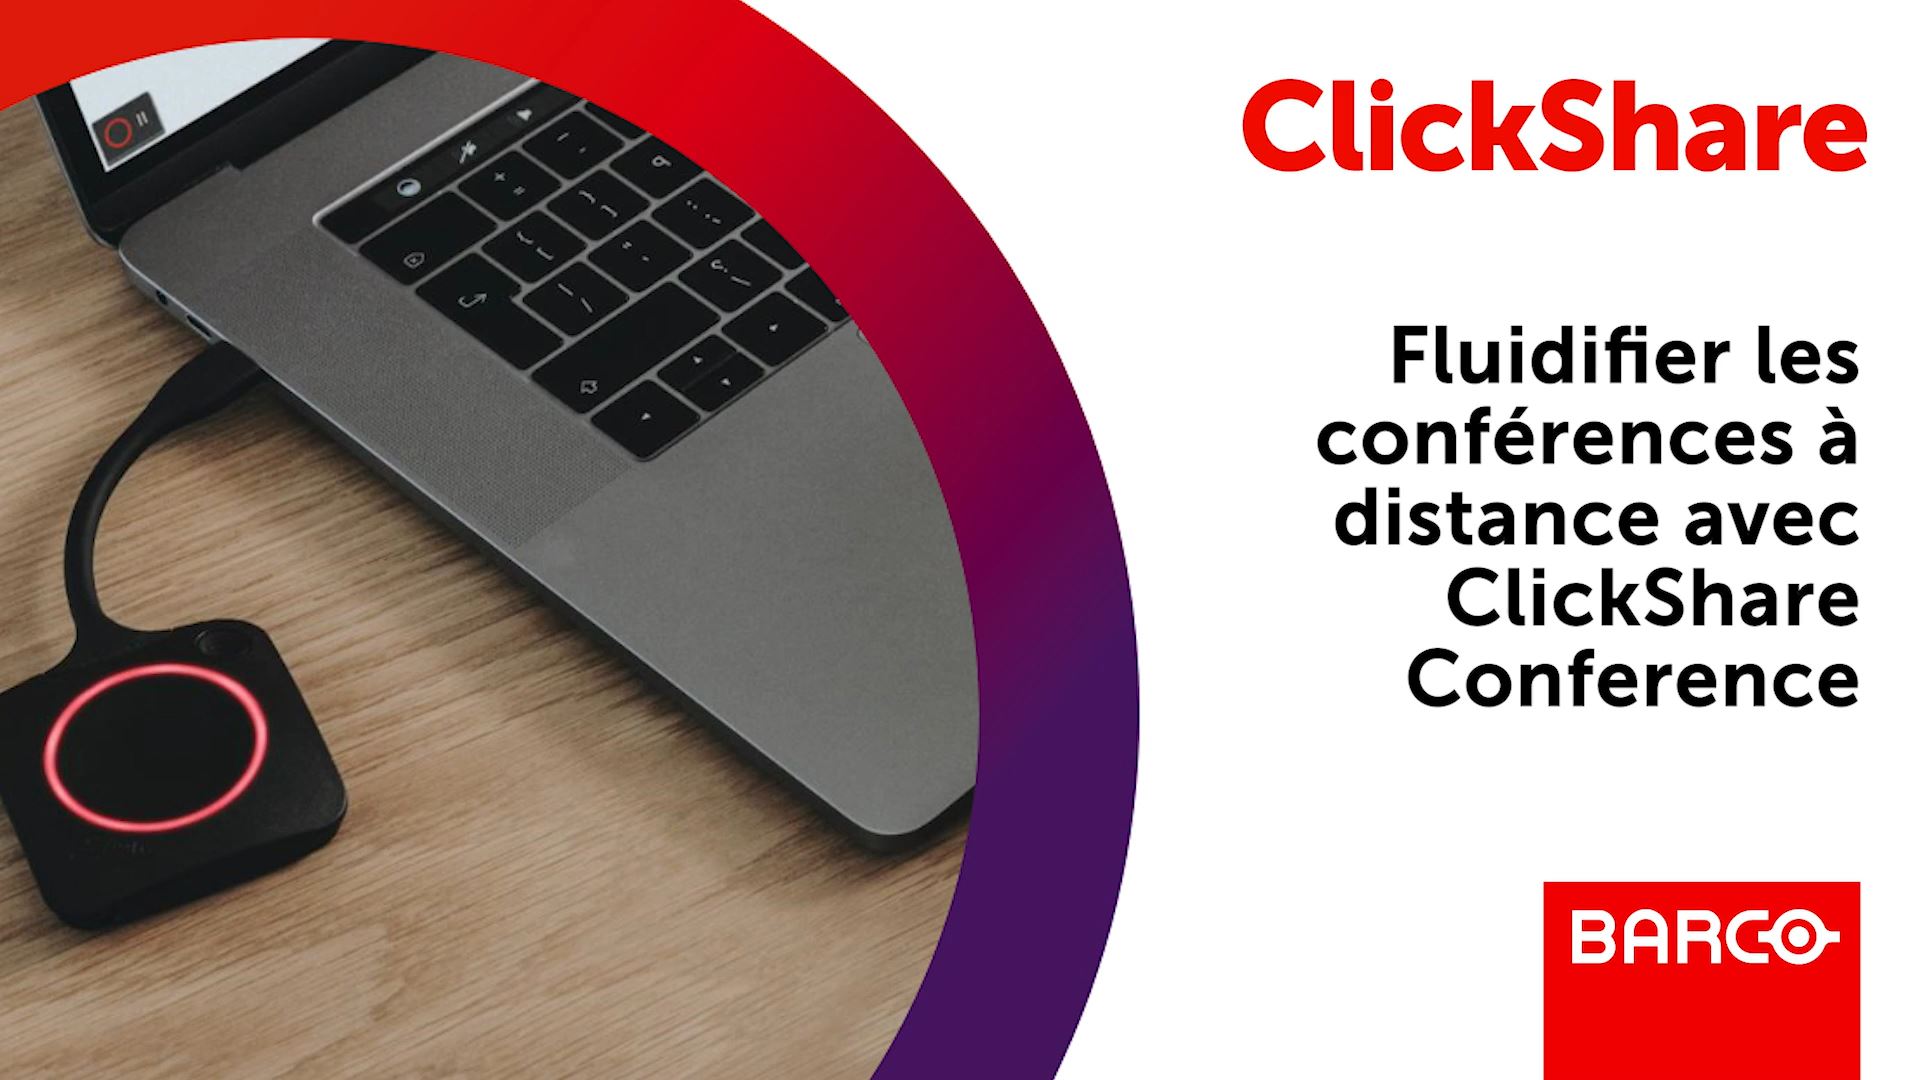 Fluidifier les conf�rences � distance avec ClickShare Conference